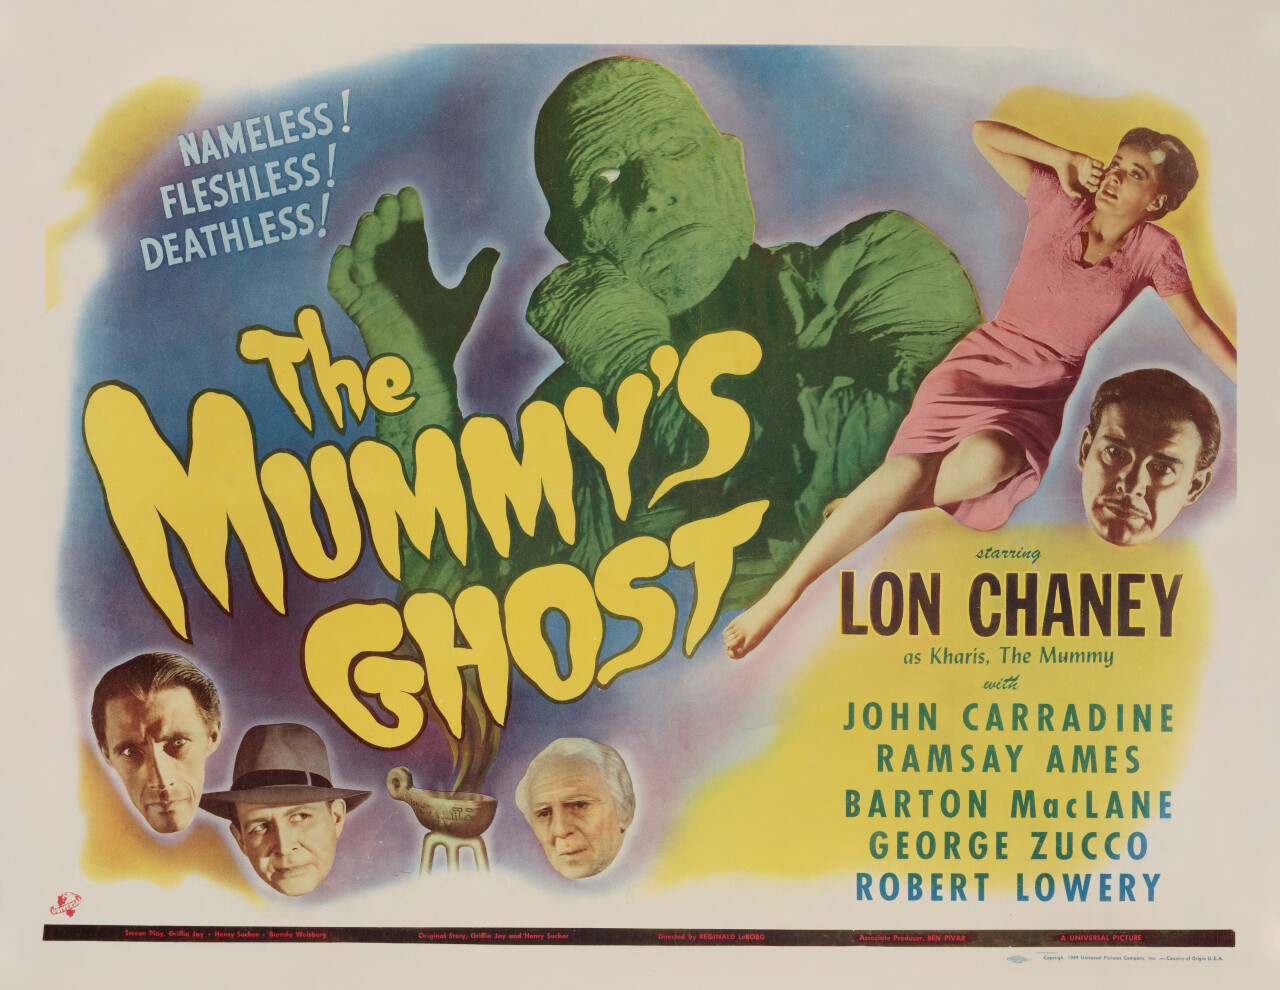 Призрак мумии (The Mummys Ghost, 1944), режиссёр Реджинальд Ле Борг, американский постер к фильму (монстры, 1944 год)